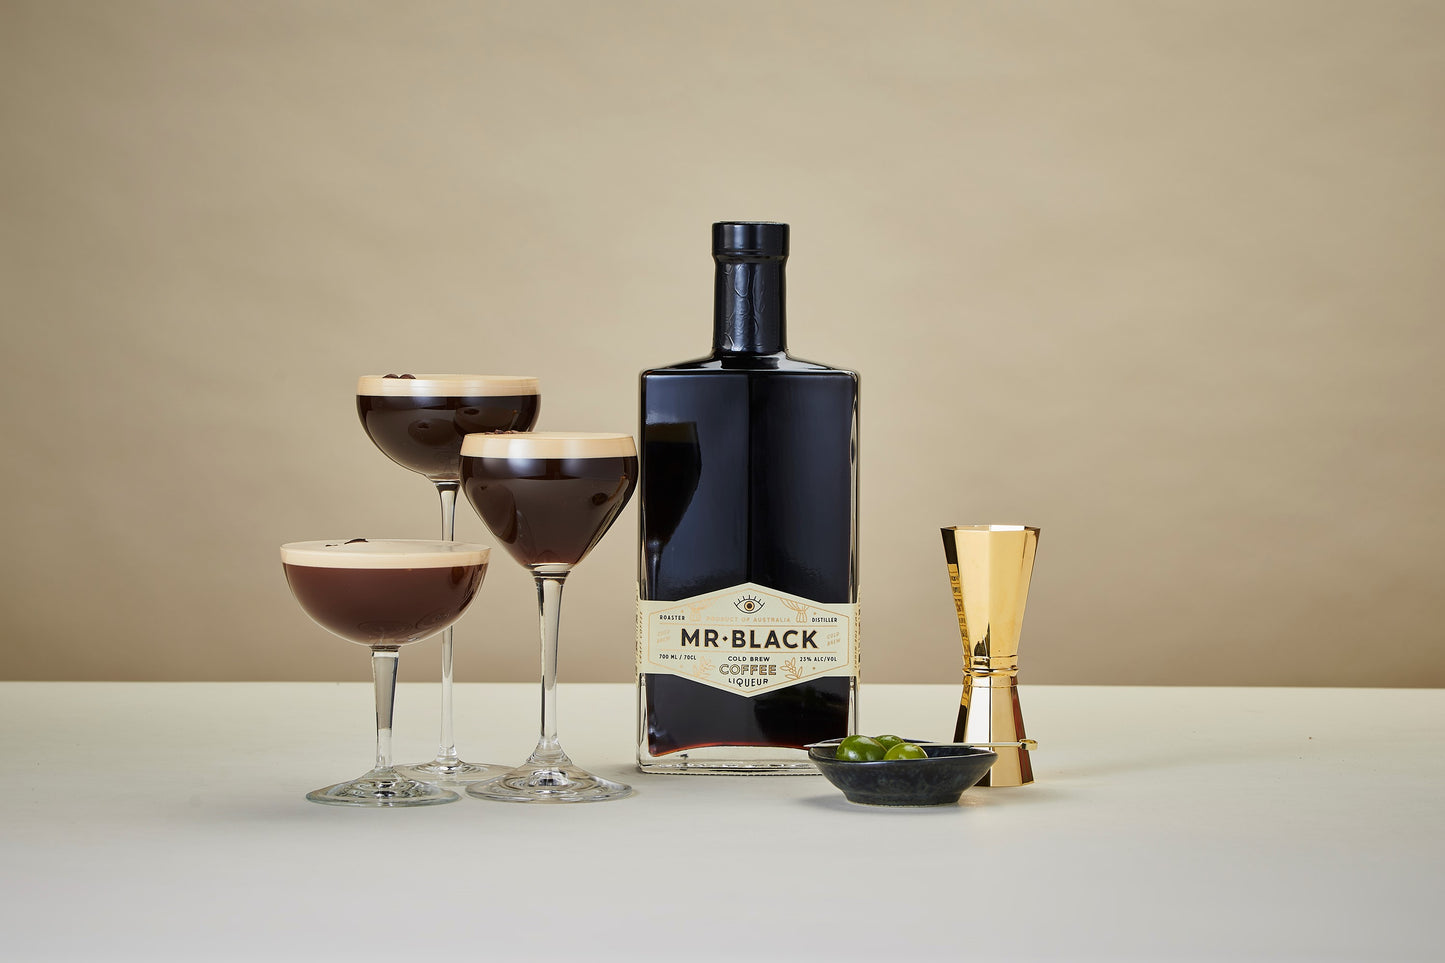 Flasche mit Mr. Black Coffee Liqueur Logo steht auf dem Tisch mit drei zubereiteten Espresso Martinis in unterschiedlich hohen Gläsern